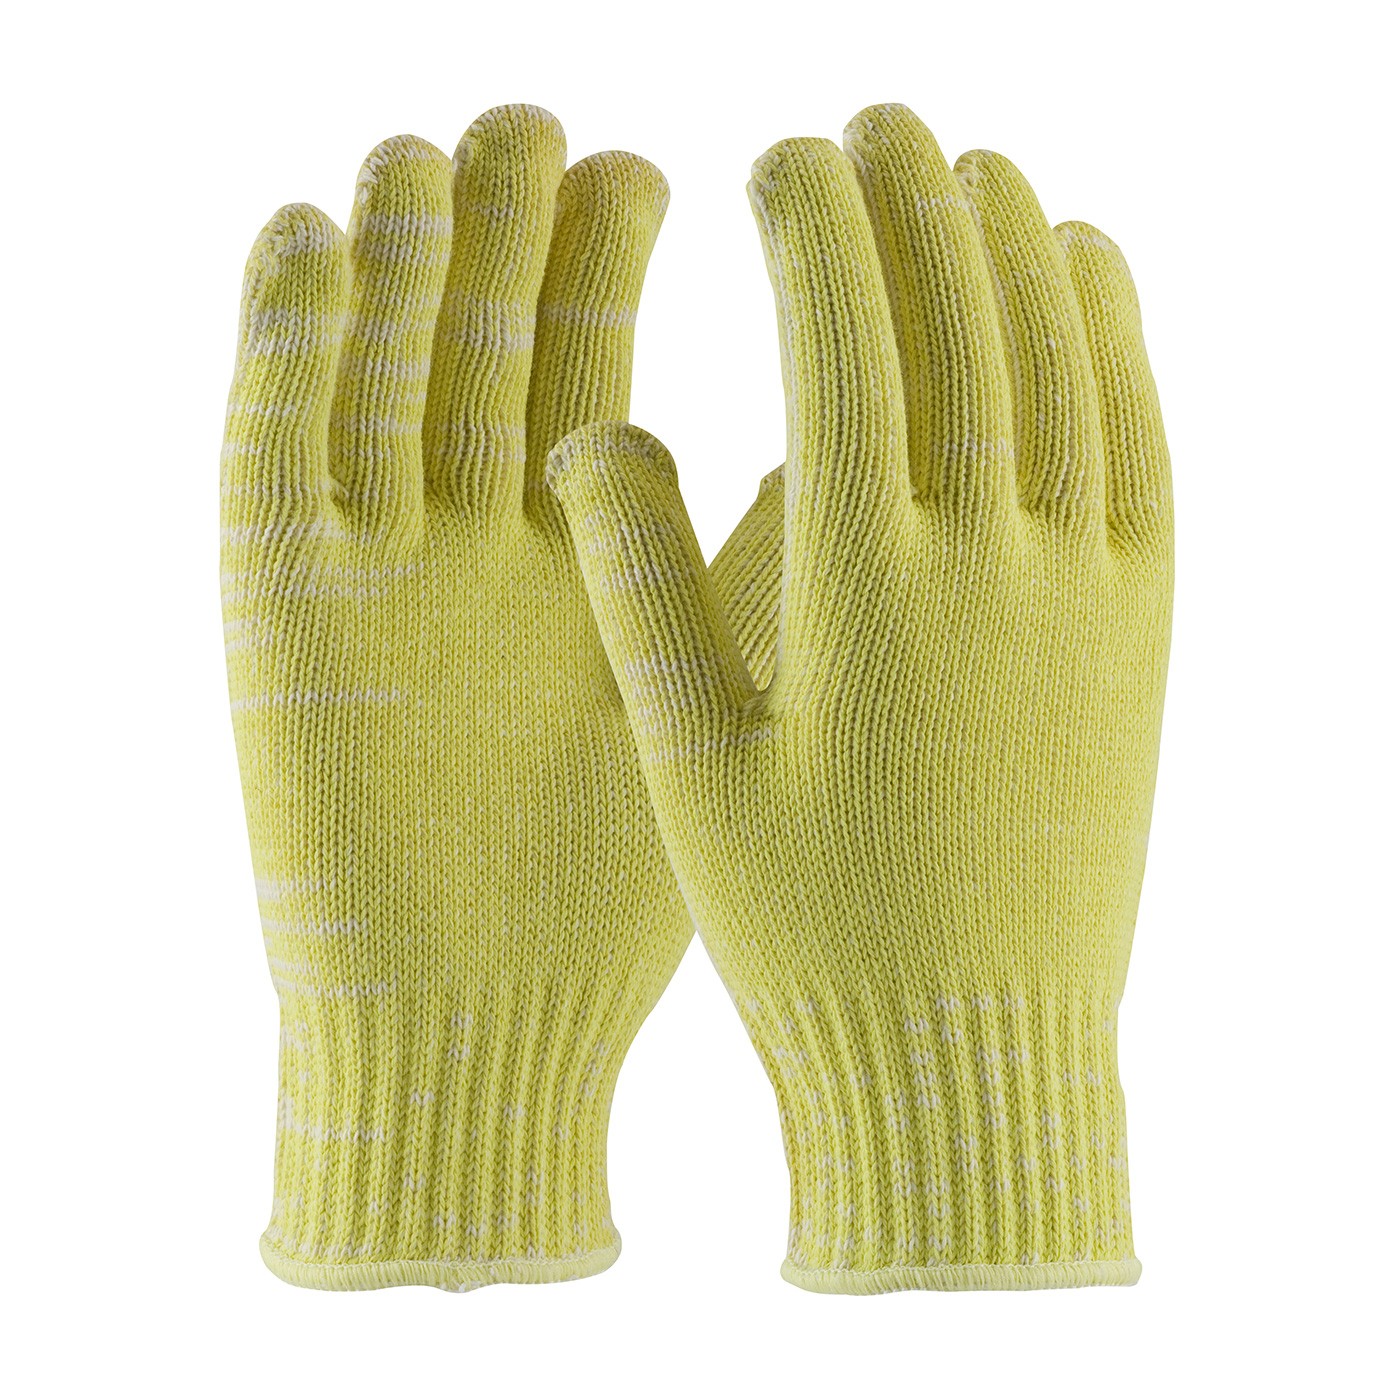 Kut Gard® Seamless Knit Kevlar® / Cotton Plated Glove - Medium Weight  (#07-K320)